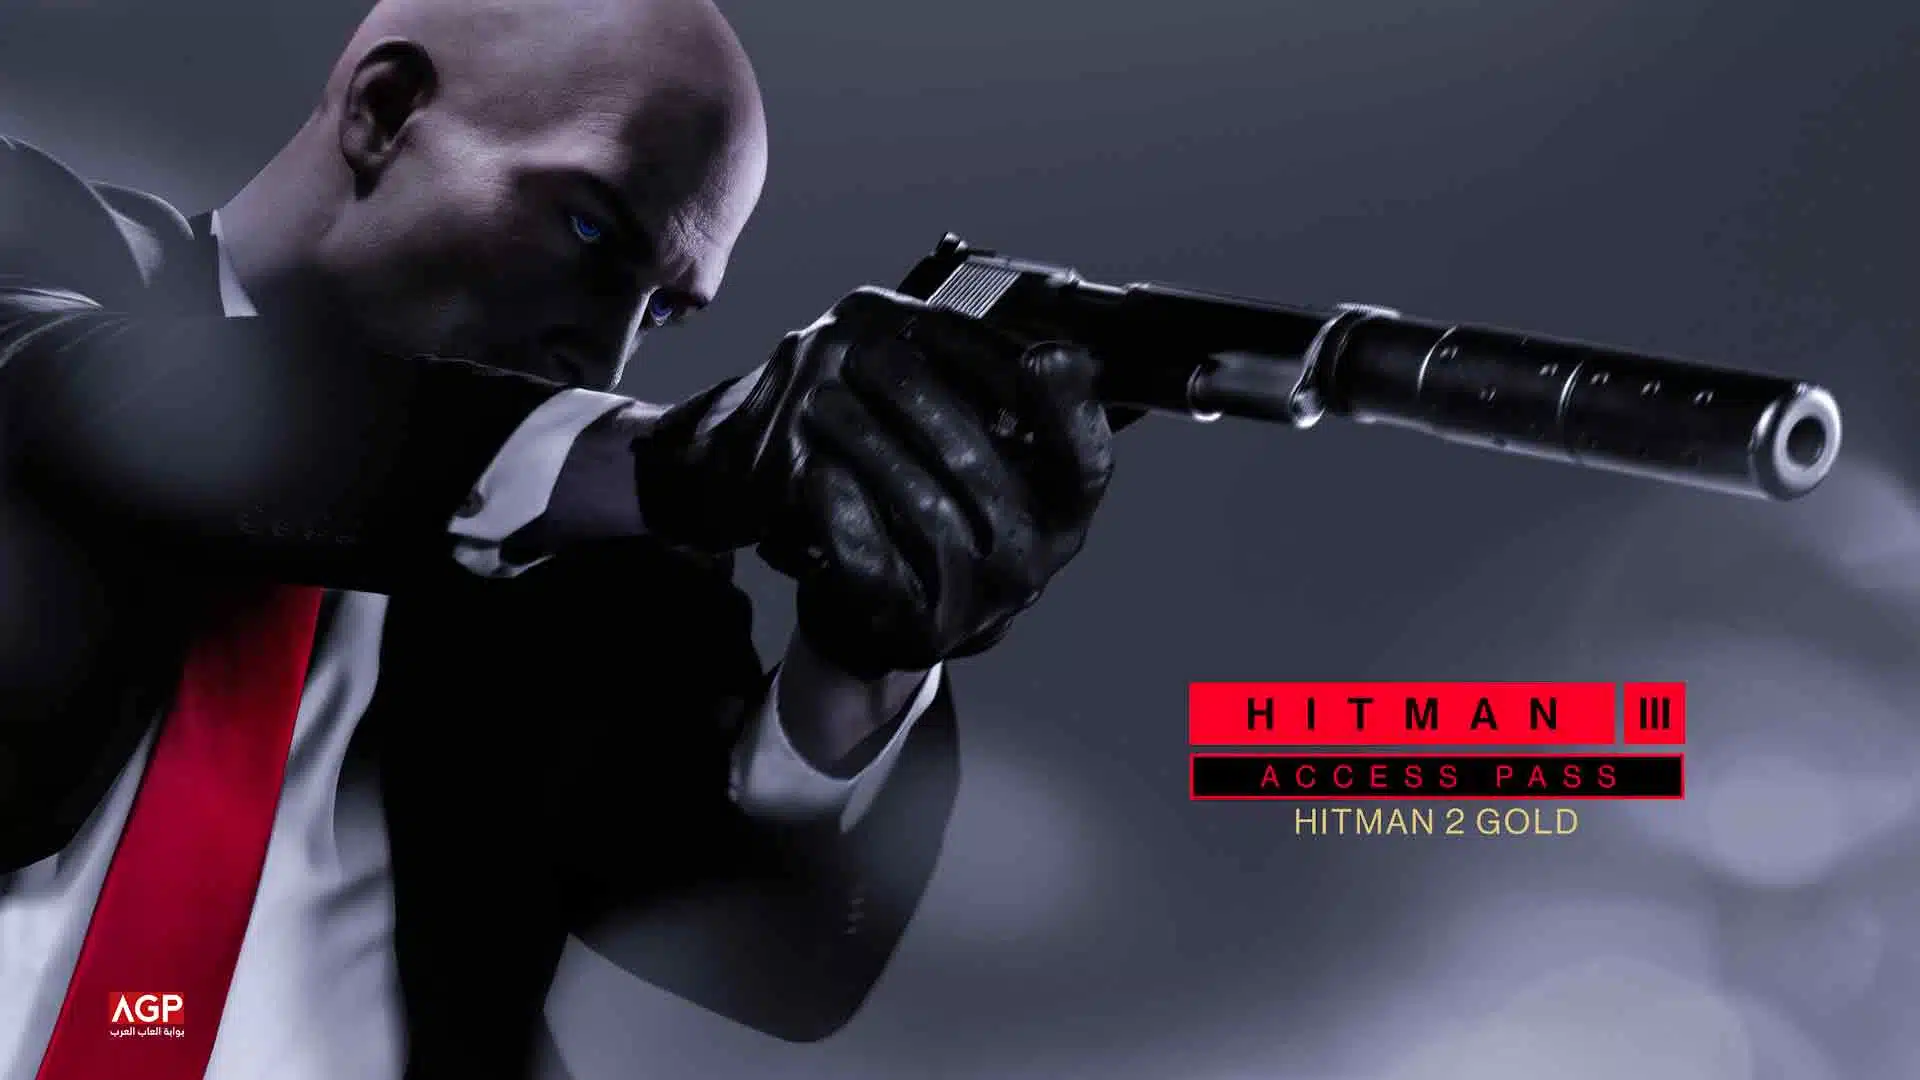 مبيعات لعبة Hitman 3 أفضل بـ 300٪ من Hitman 2